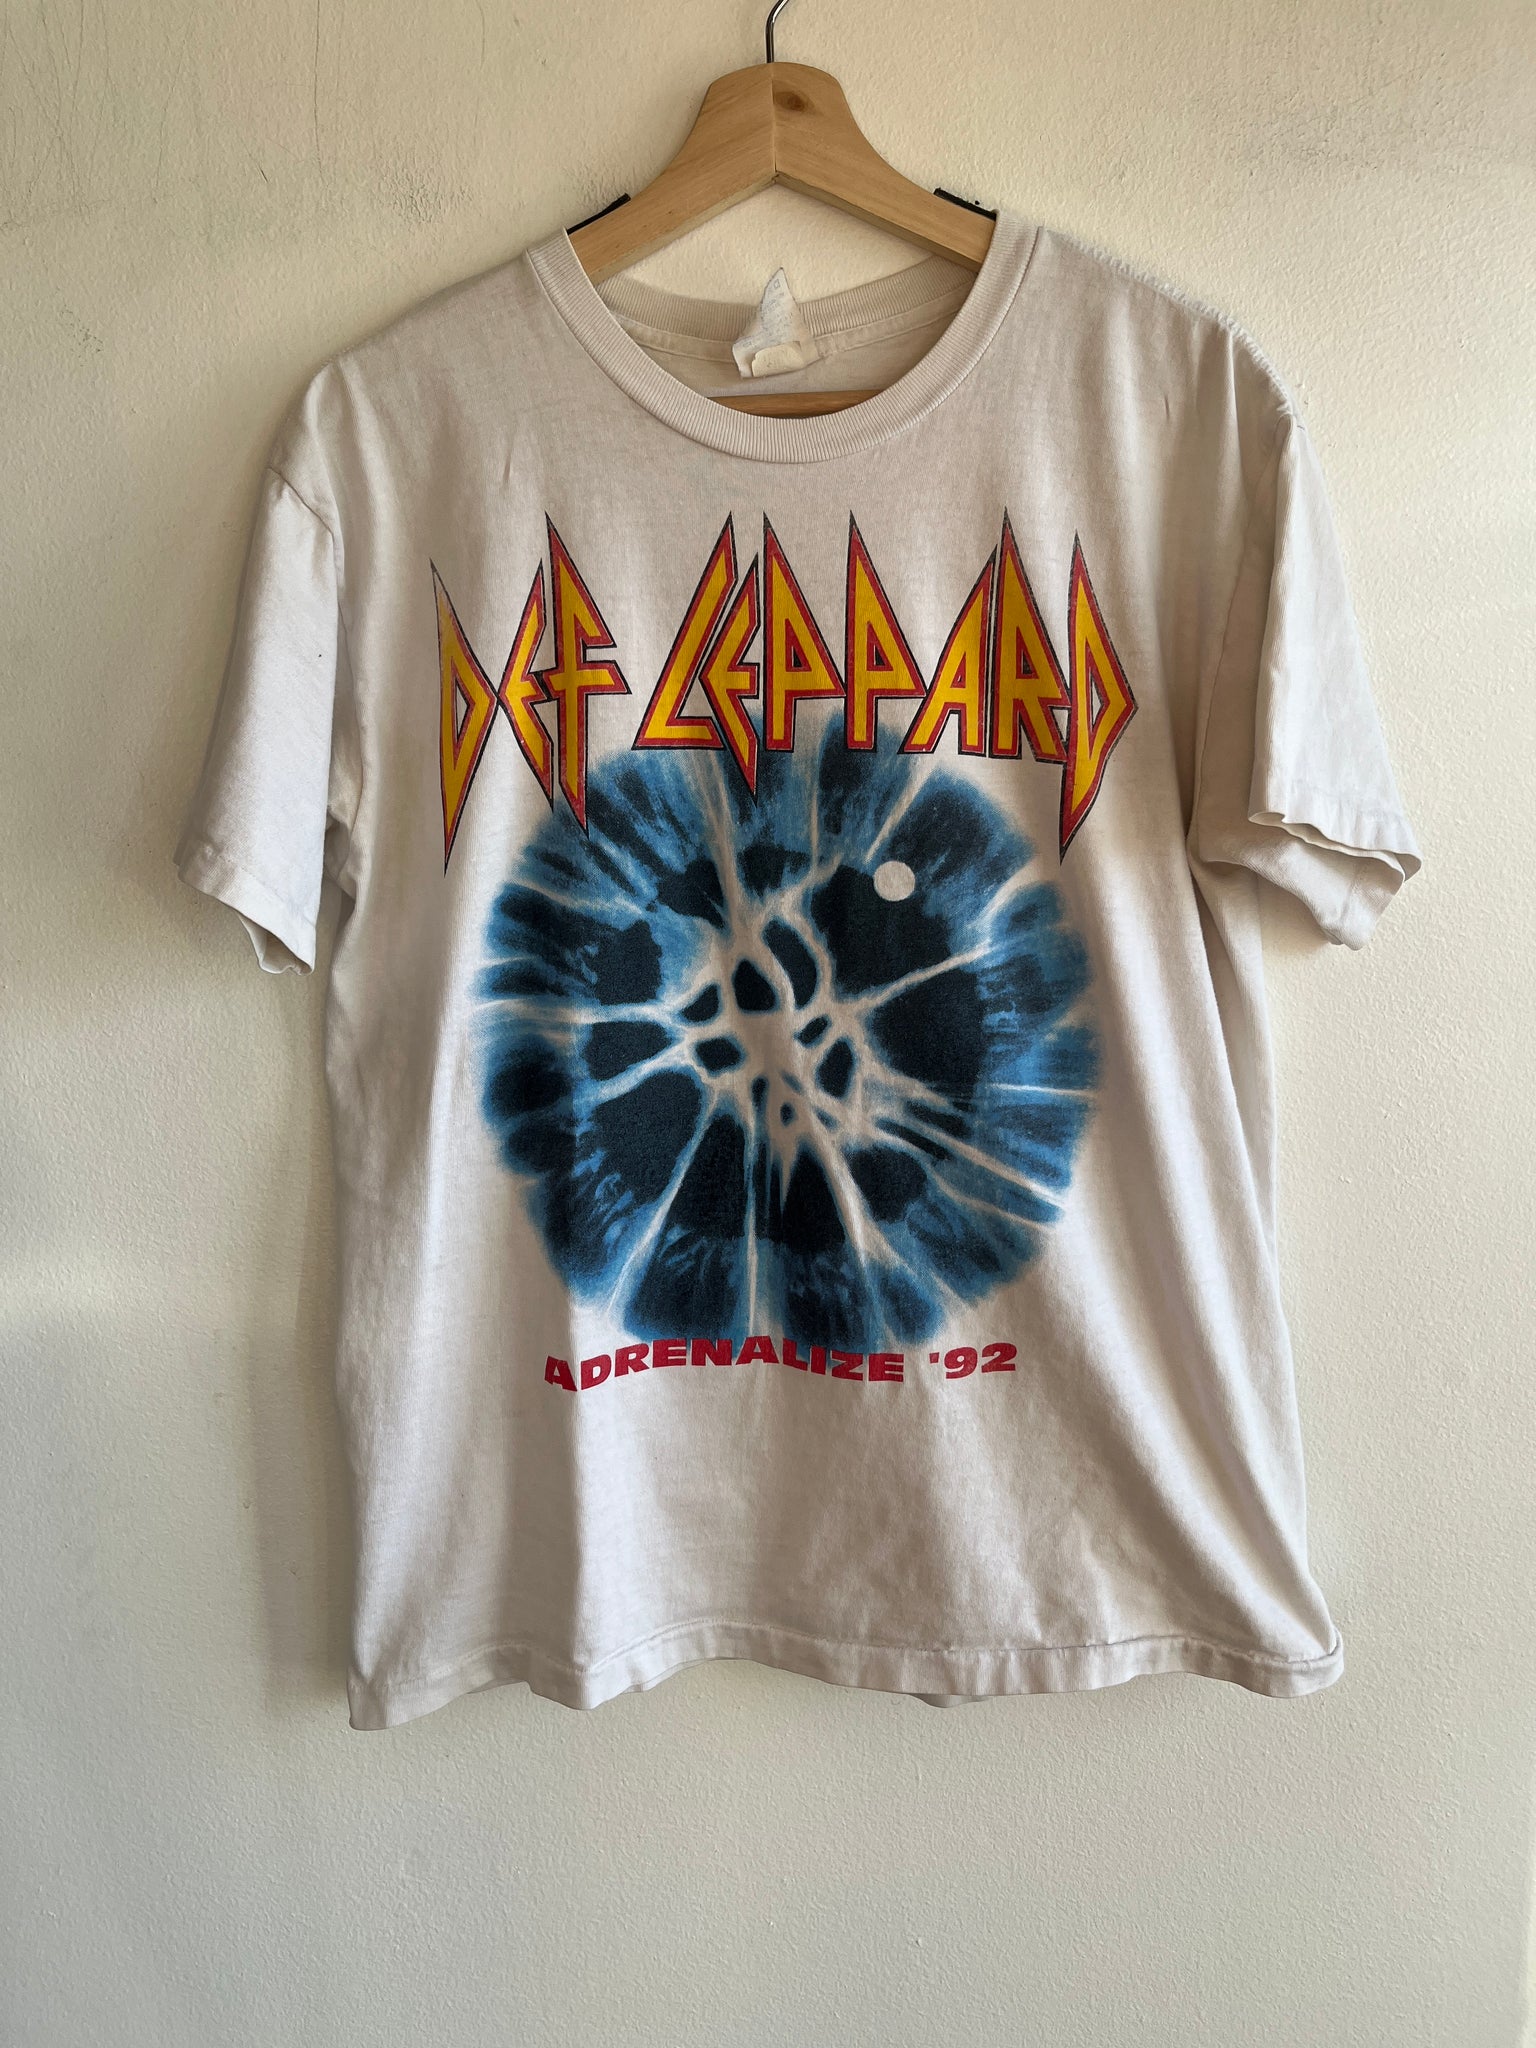 Vintage 1992 Def Leppard T-Shirt